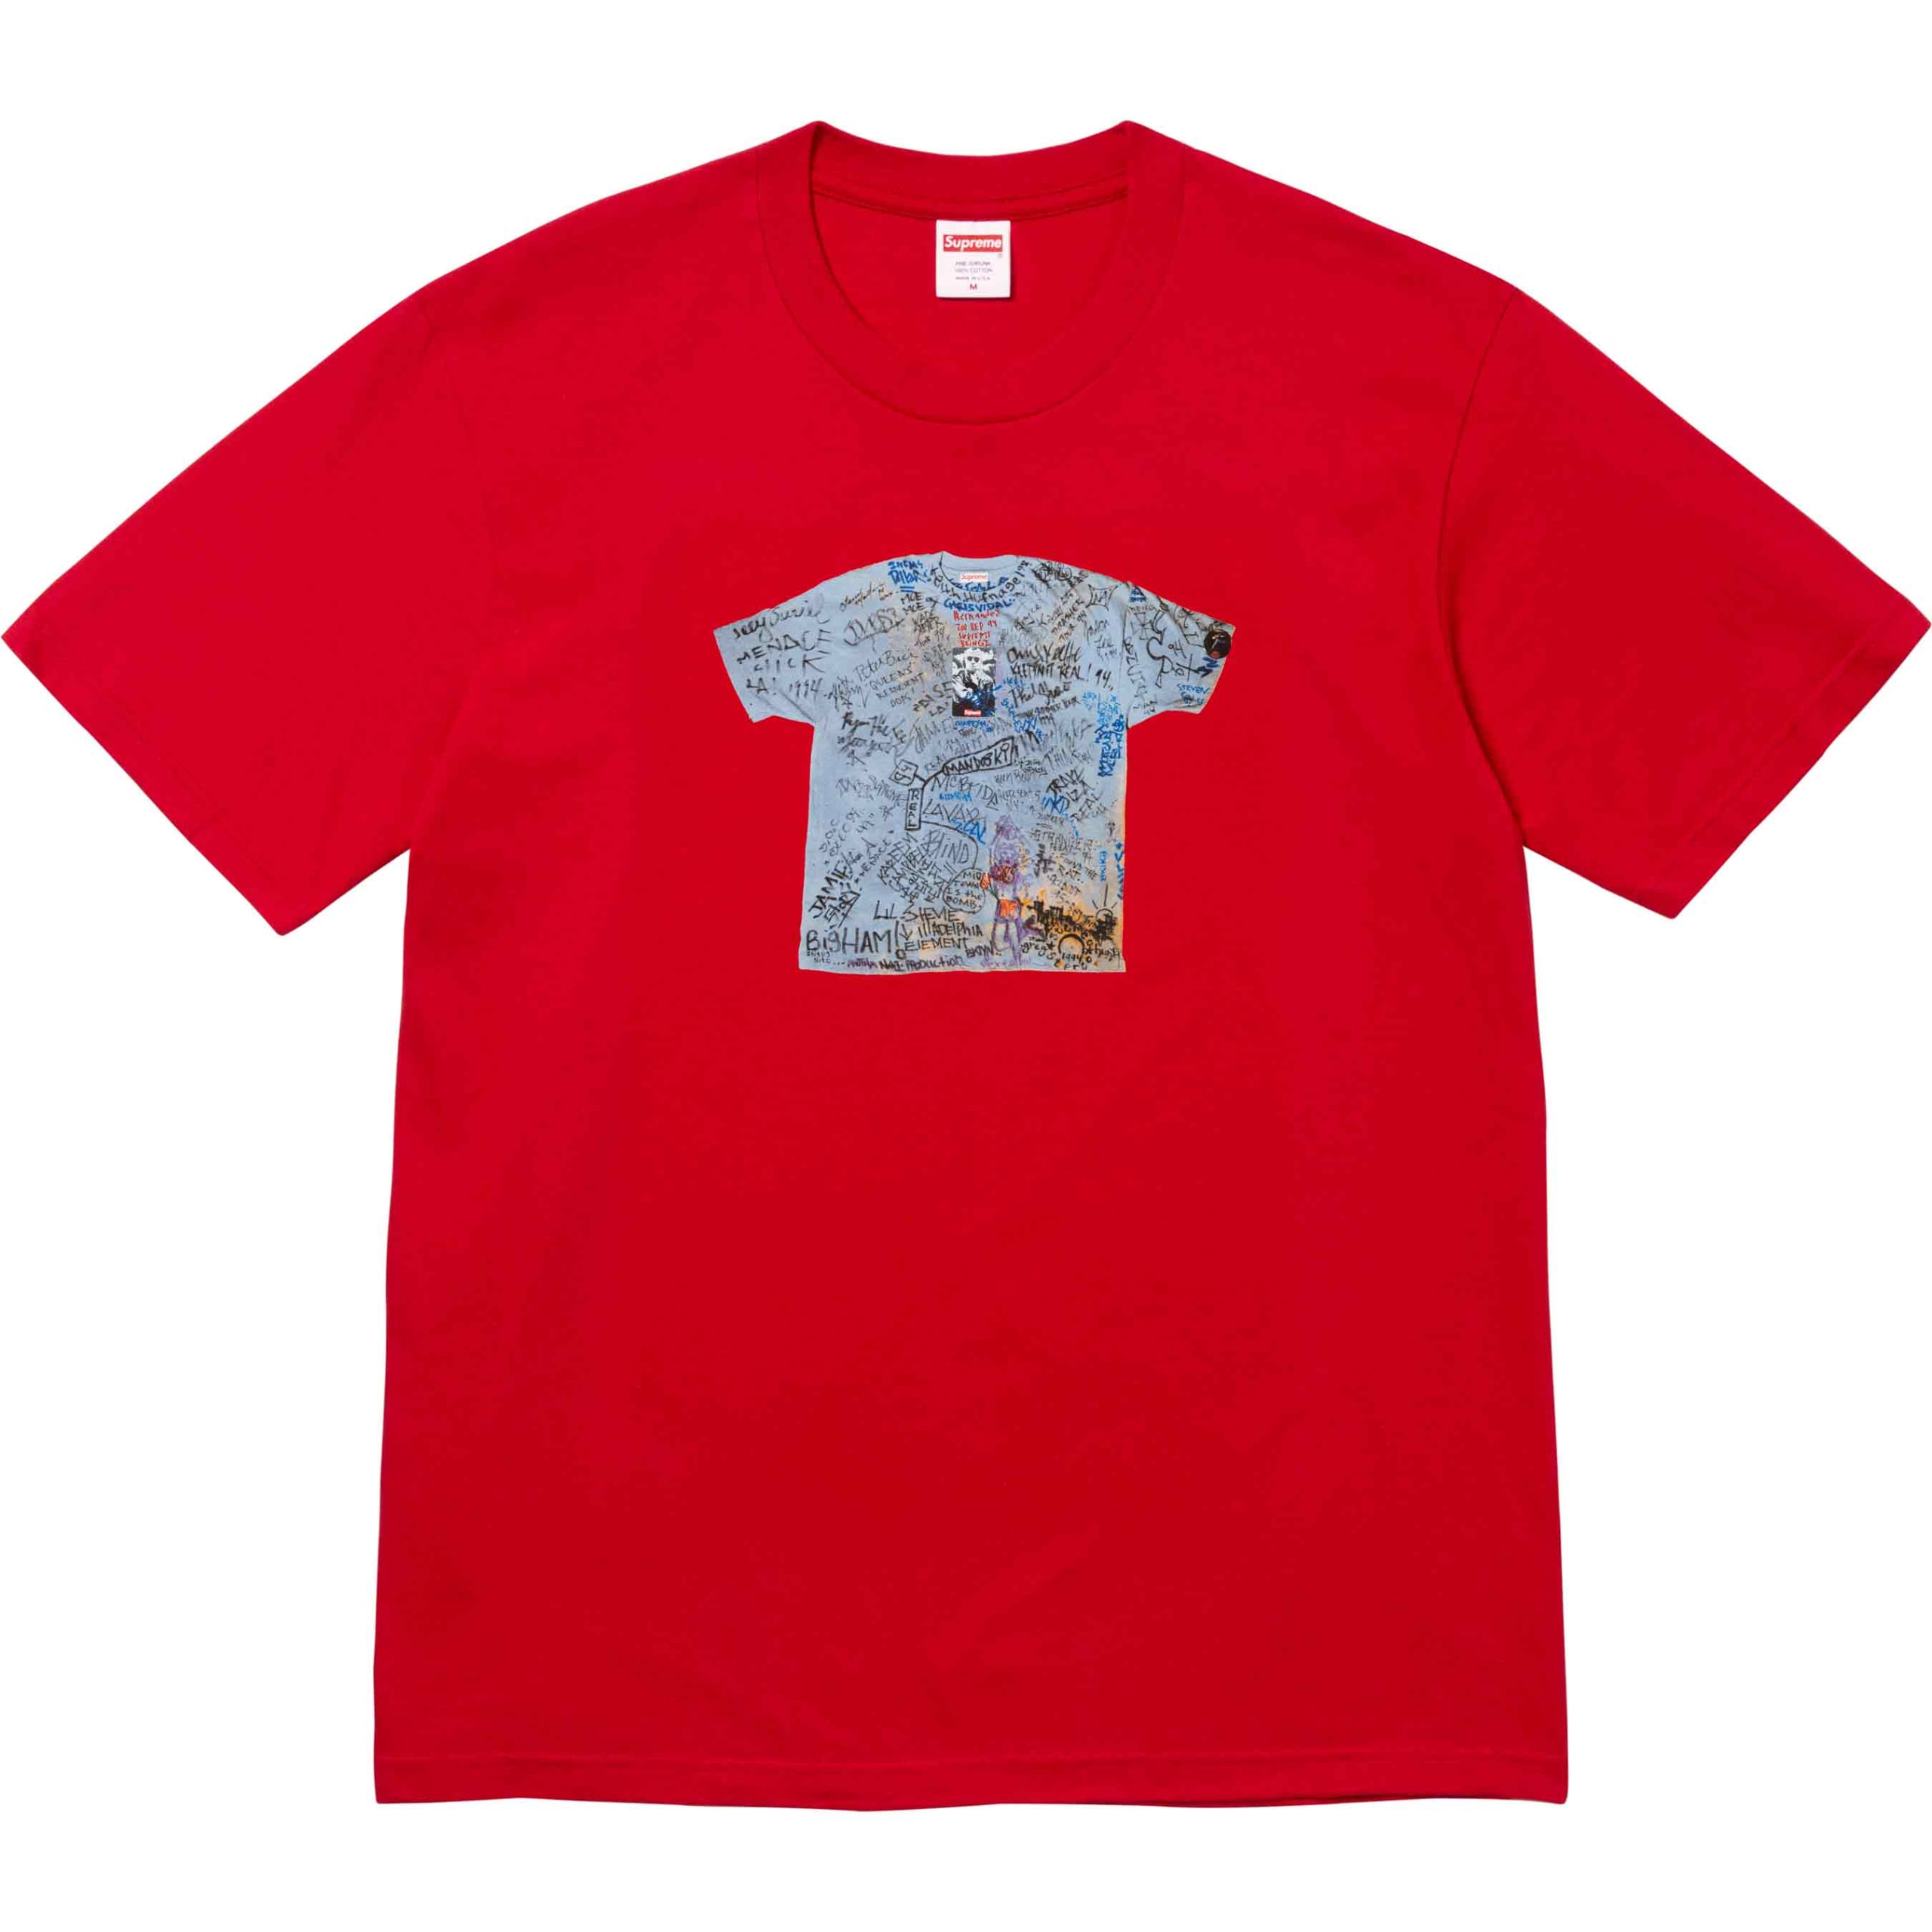 持续庆祝成立 30 周年，Supreme 释出「First T-Shirt」